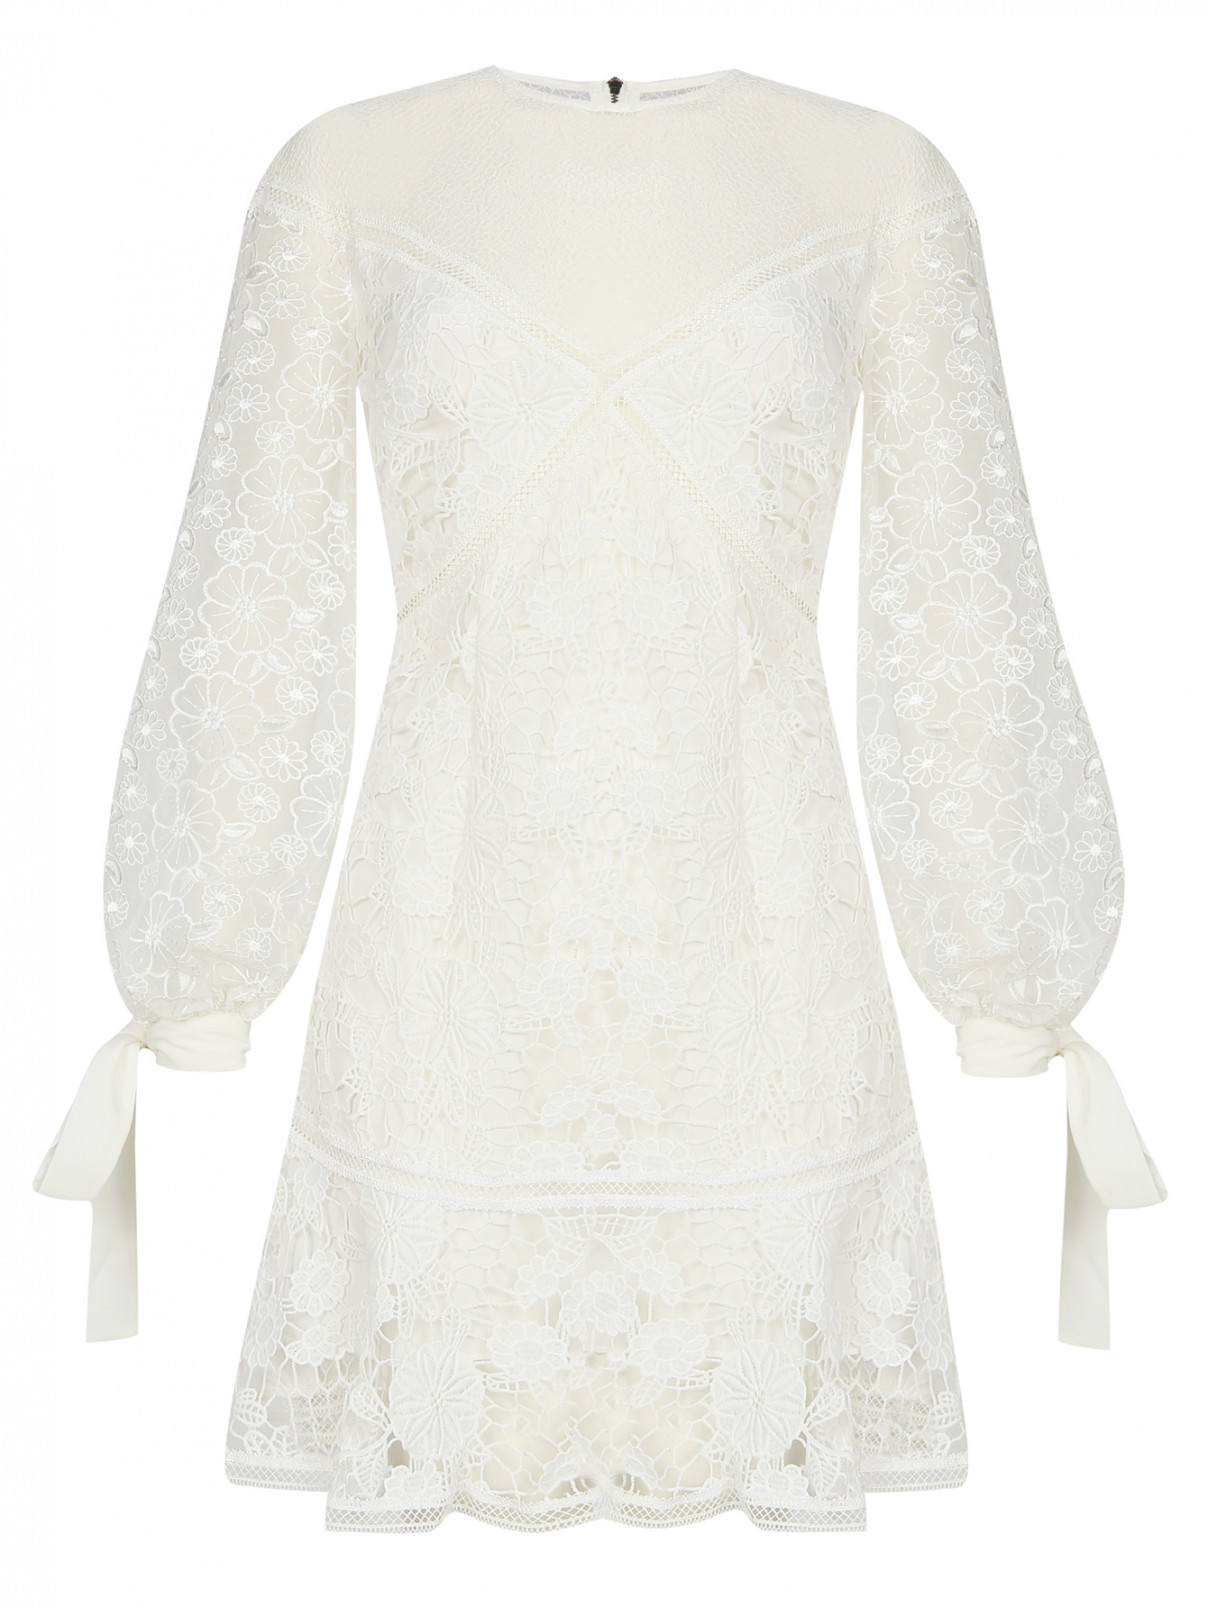 Платье кружевное платье-мини с длинным рукавом Keepsake  –  Общий вид  – Цвет:  Белый